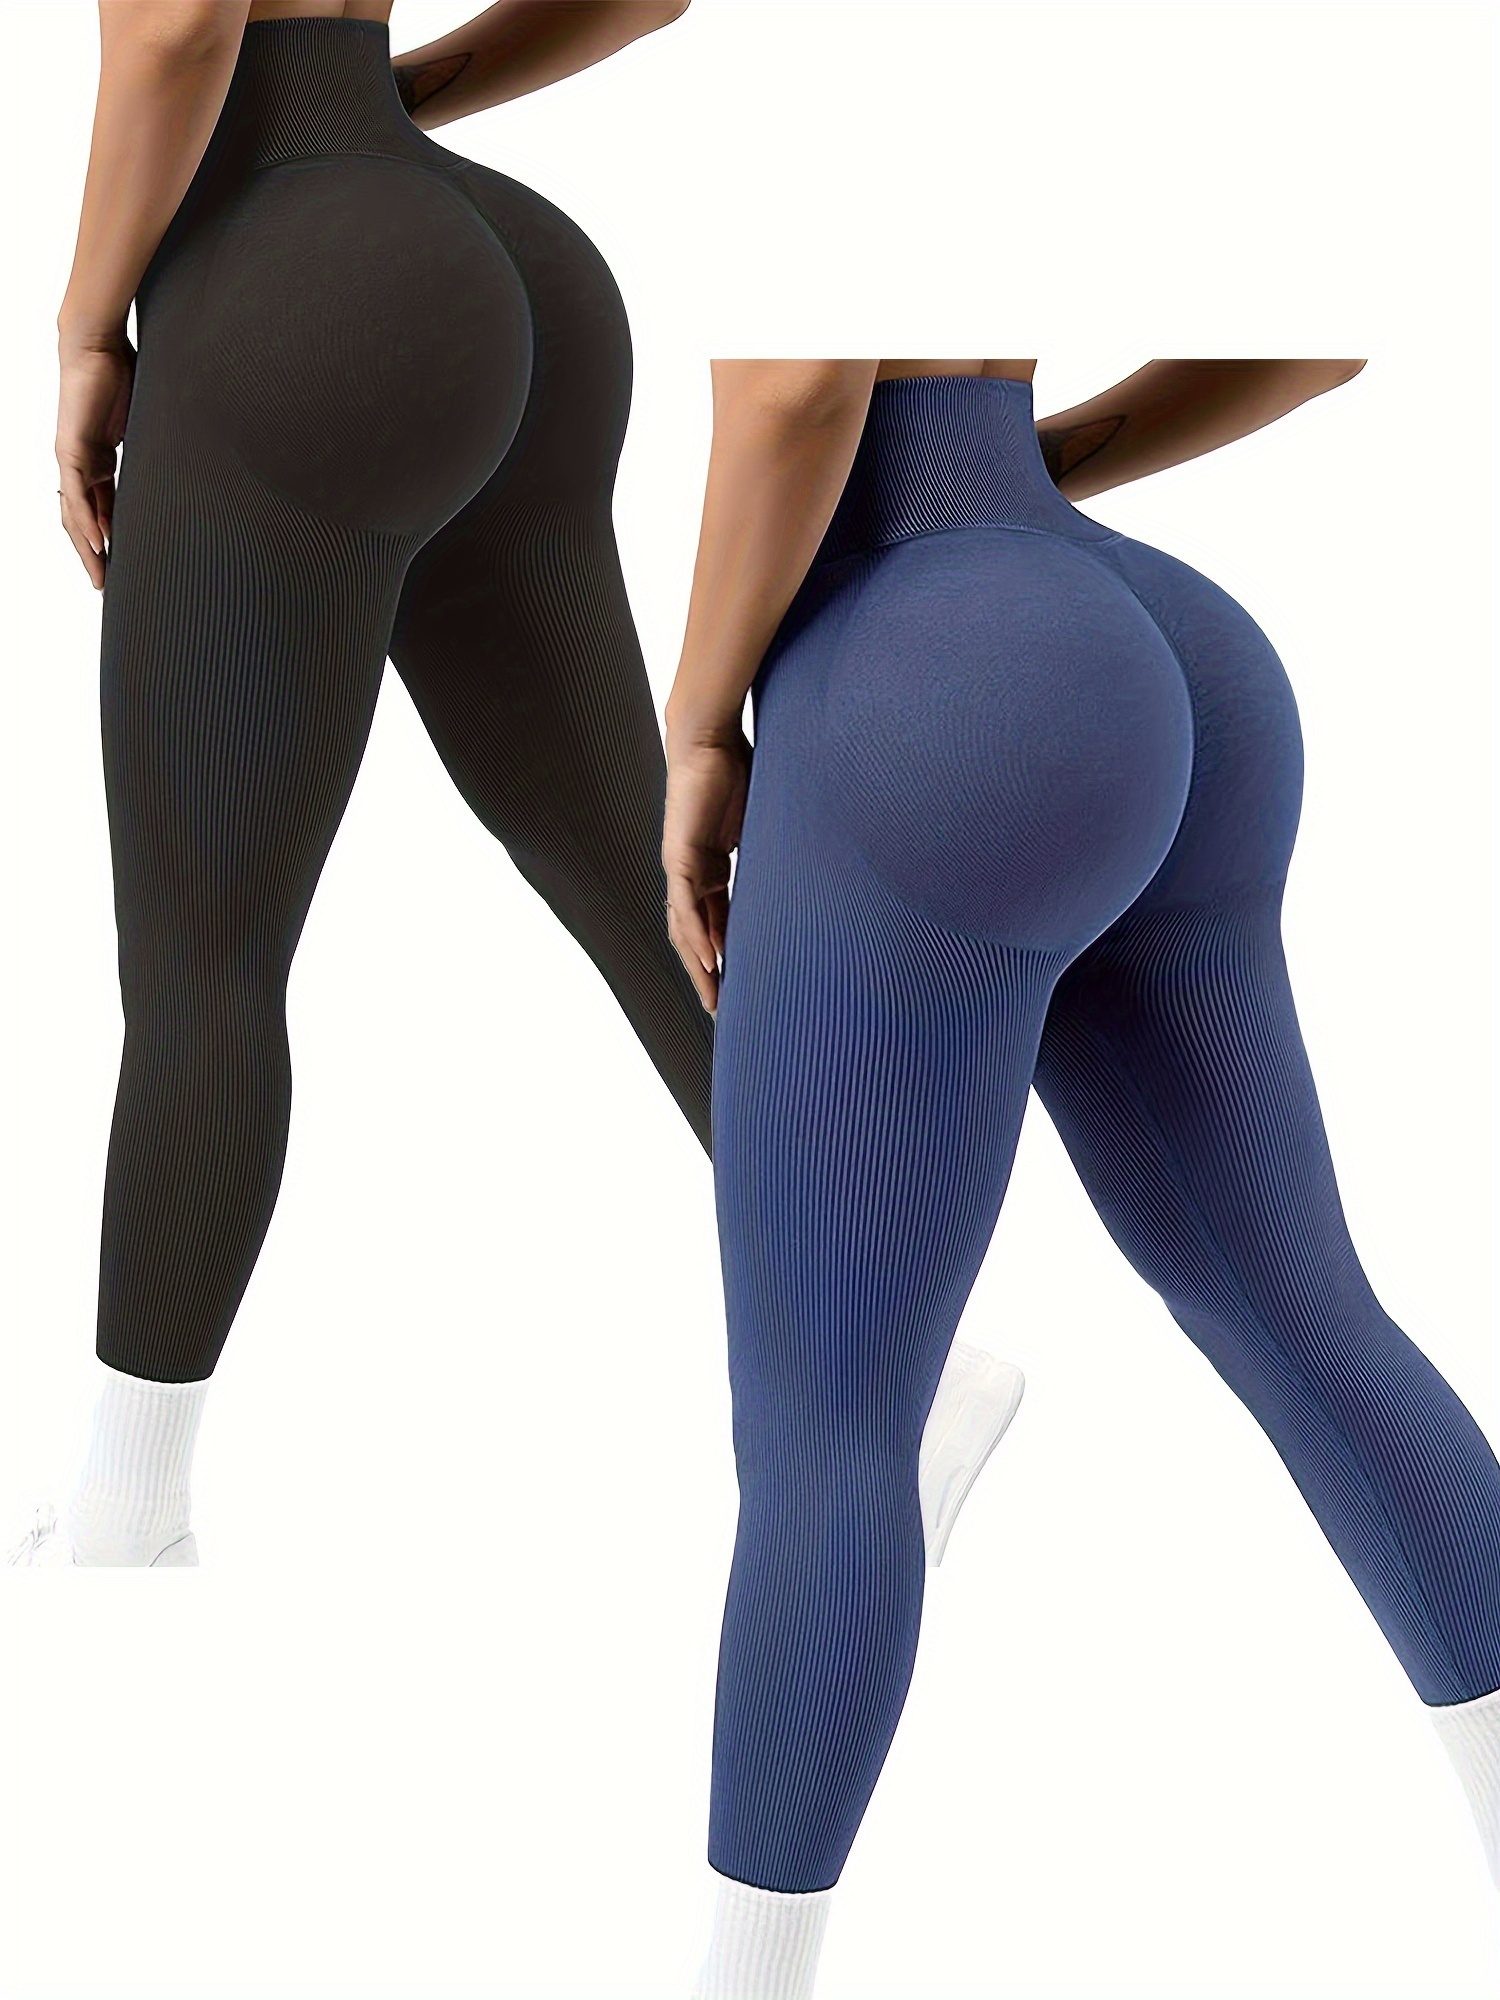  Women Scrunch Butt Lifting Leggings Seamless High